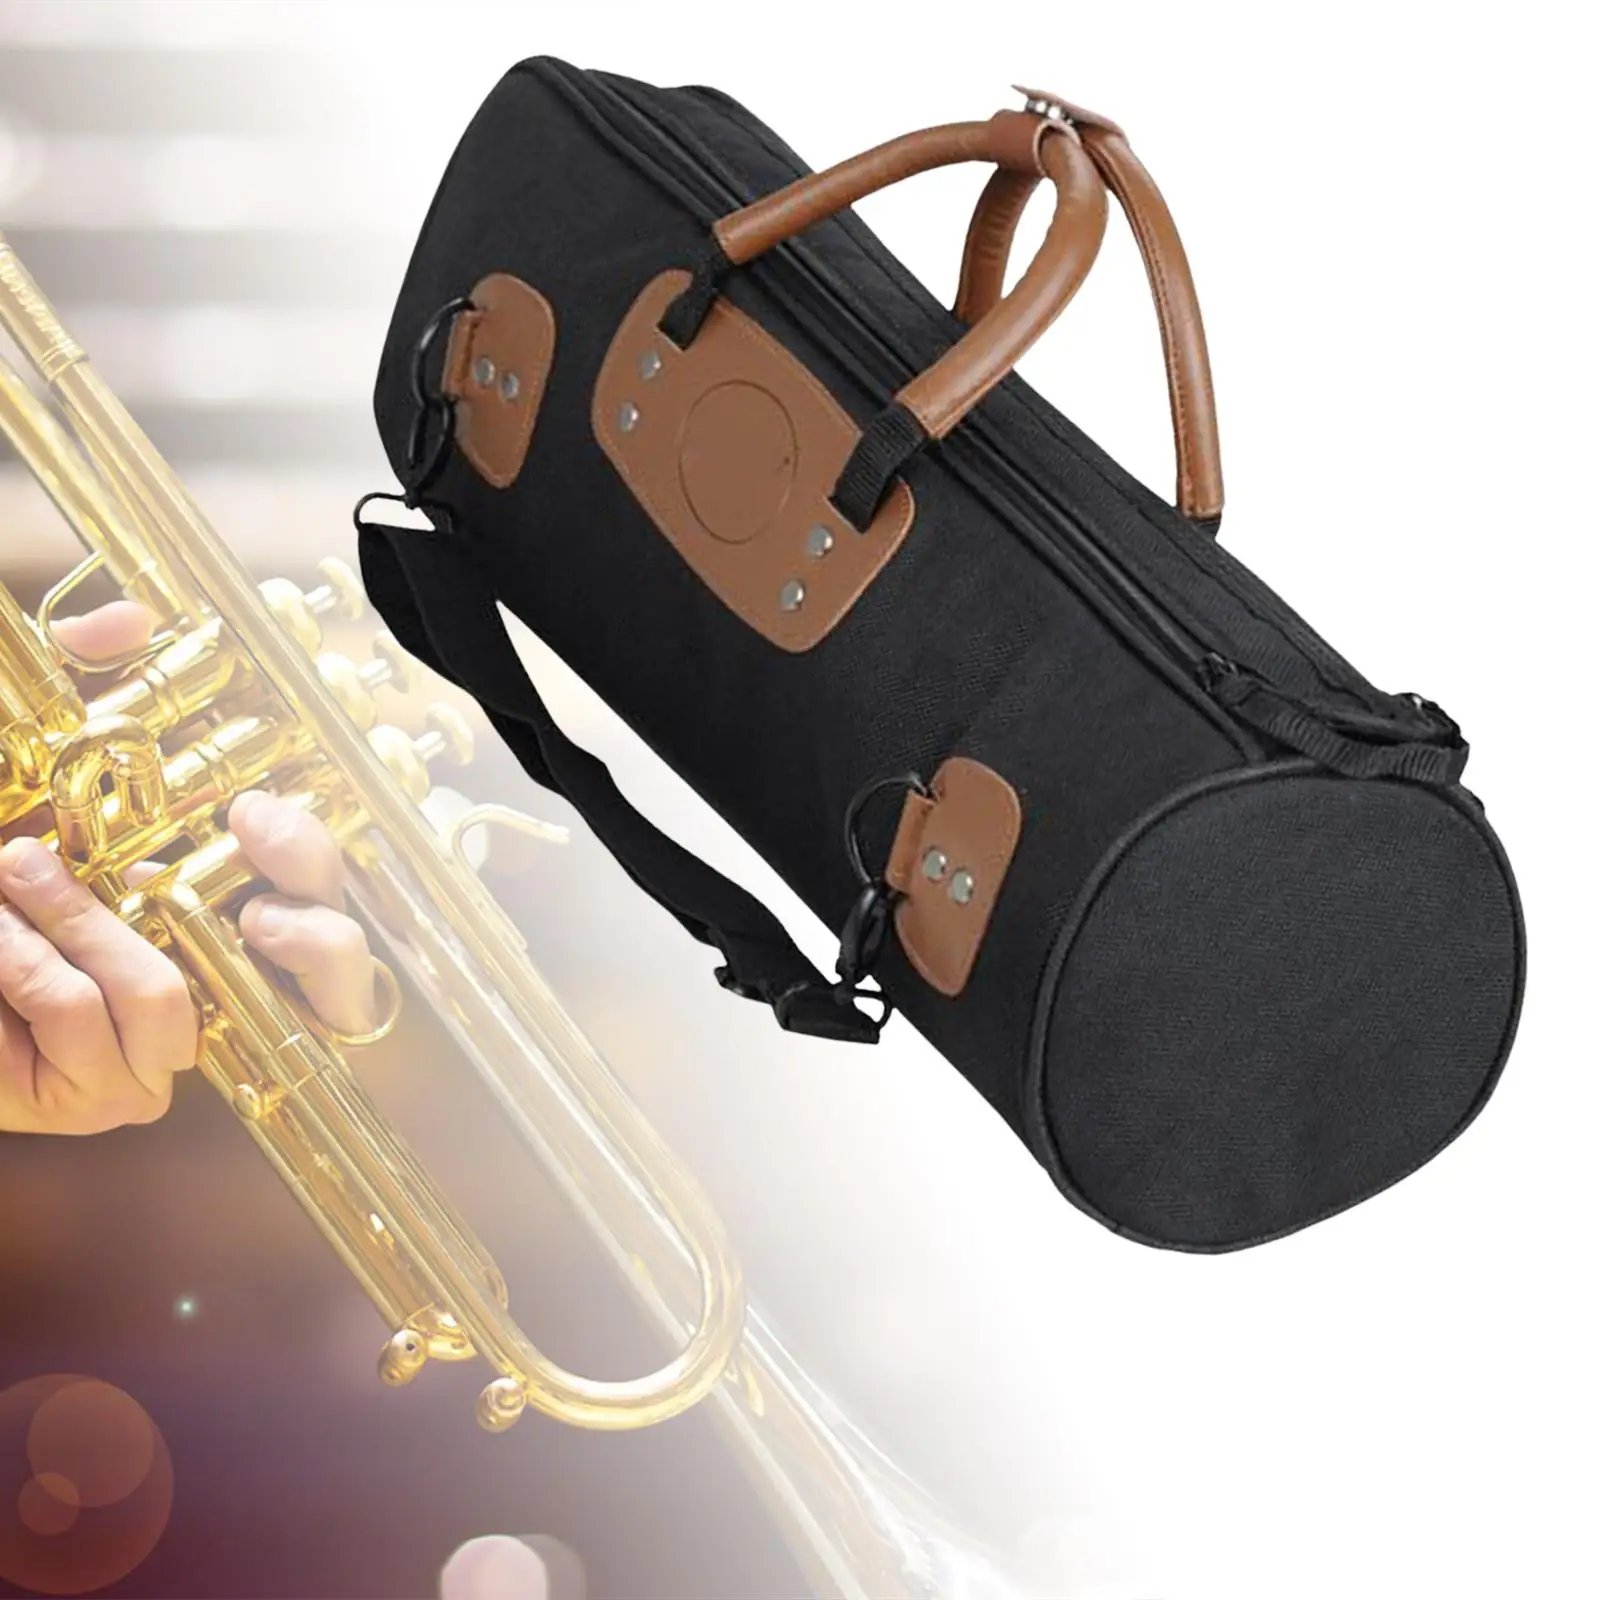 Concert Trumpet Gig Bag Widen Carry Handle with Strap Adjustable Shoudler Strap Professional Lightweight Trumpet Carry Gig Bag